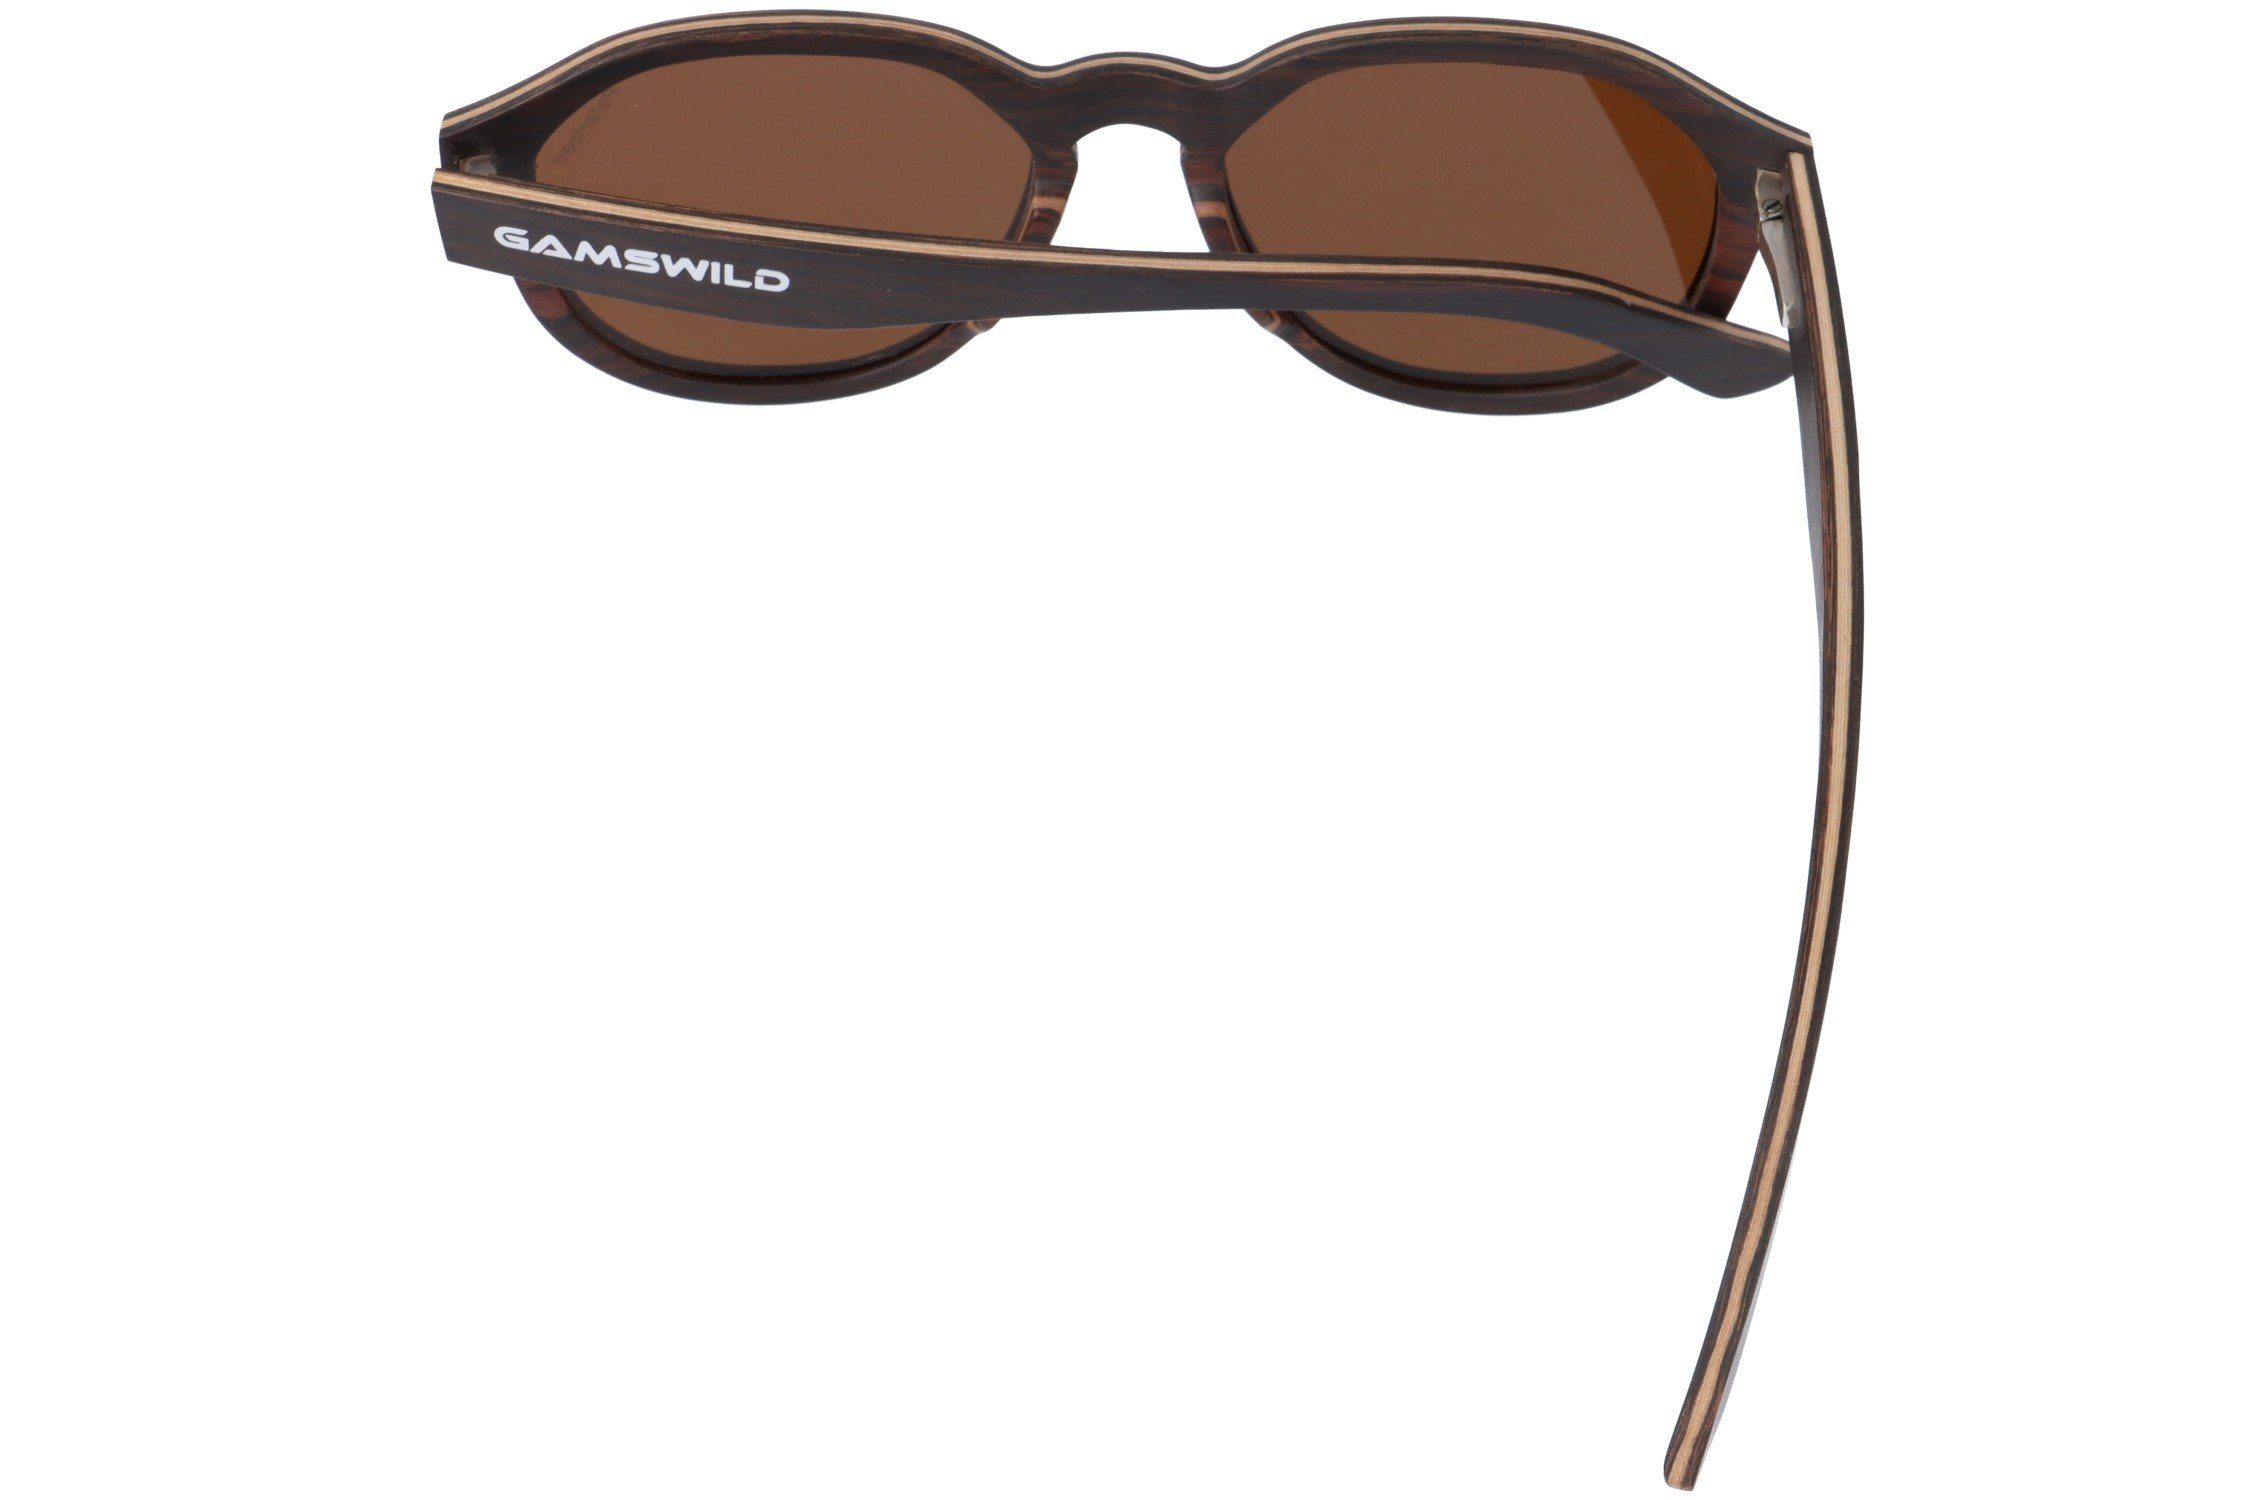 Gamswild Sonnenbrille Brille Herren Holzbrille Unisex, grau, Gläser Damen GAMSSTYLE braun, WM0013 polarisierte lila in